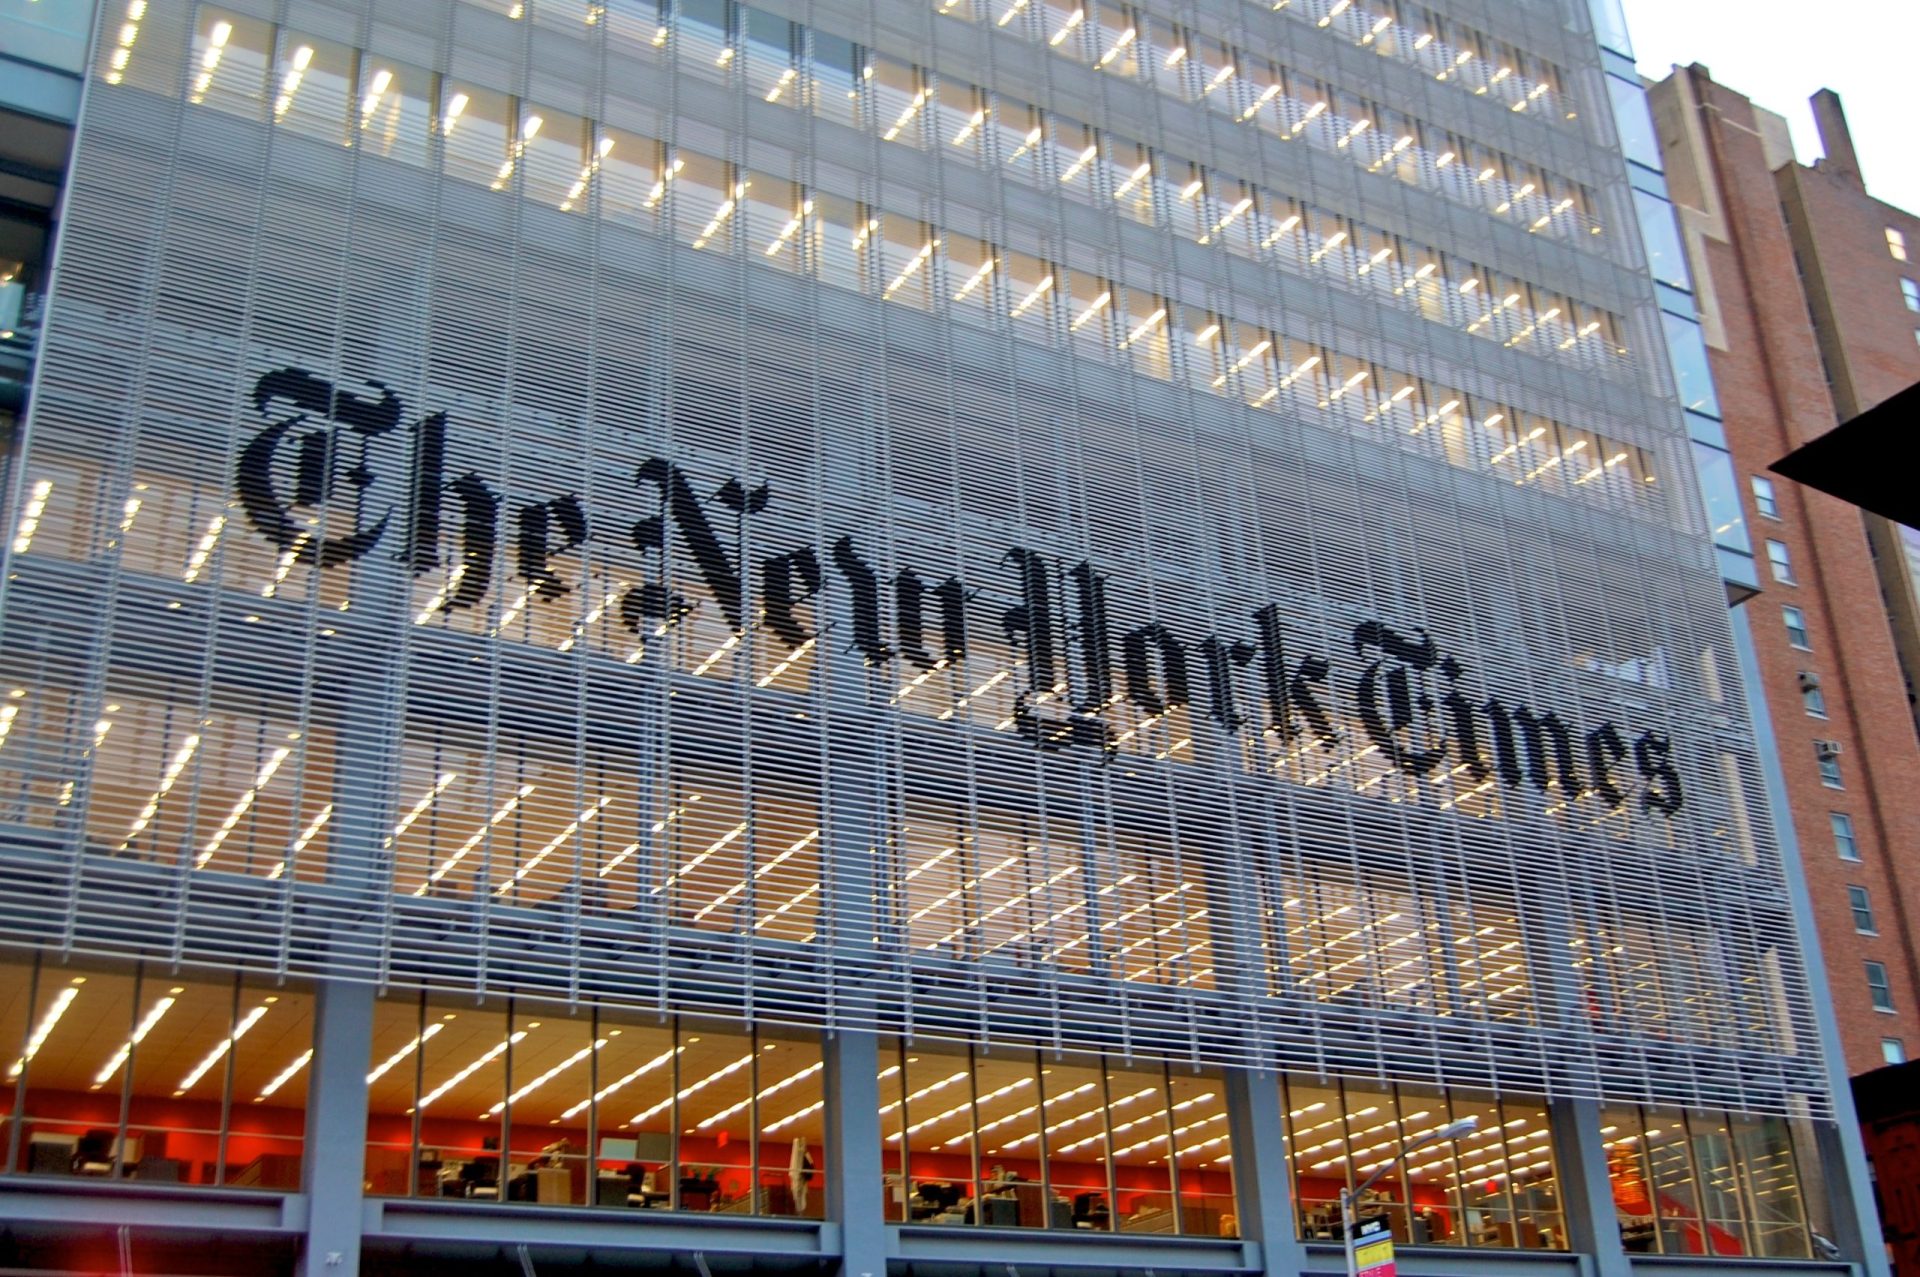 Colunista do New York Times morre na redacção